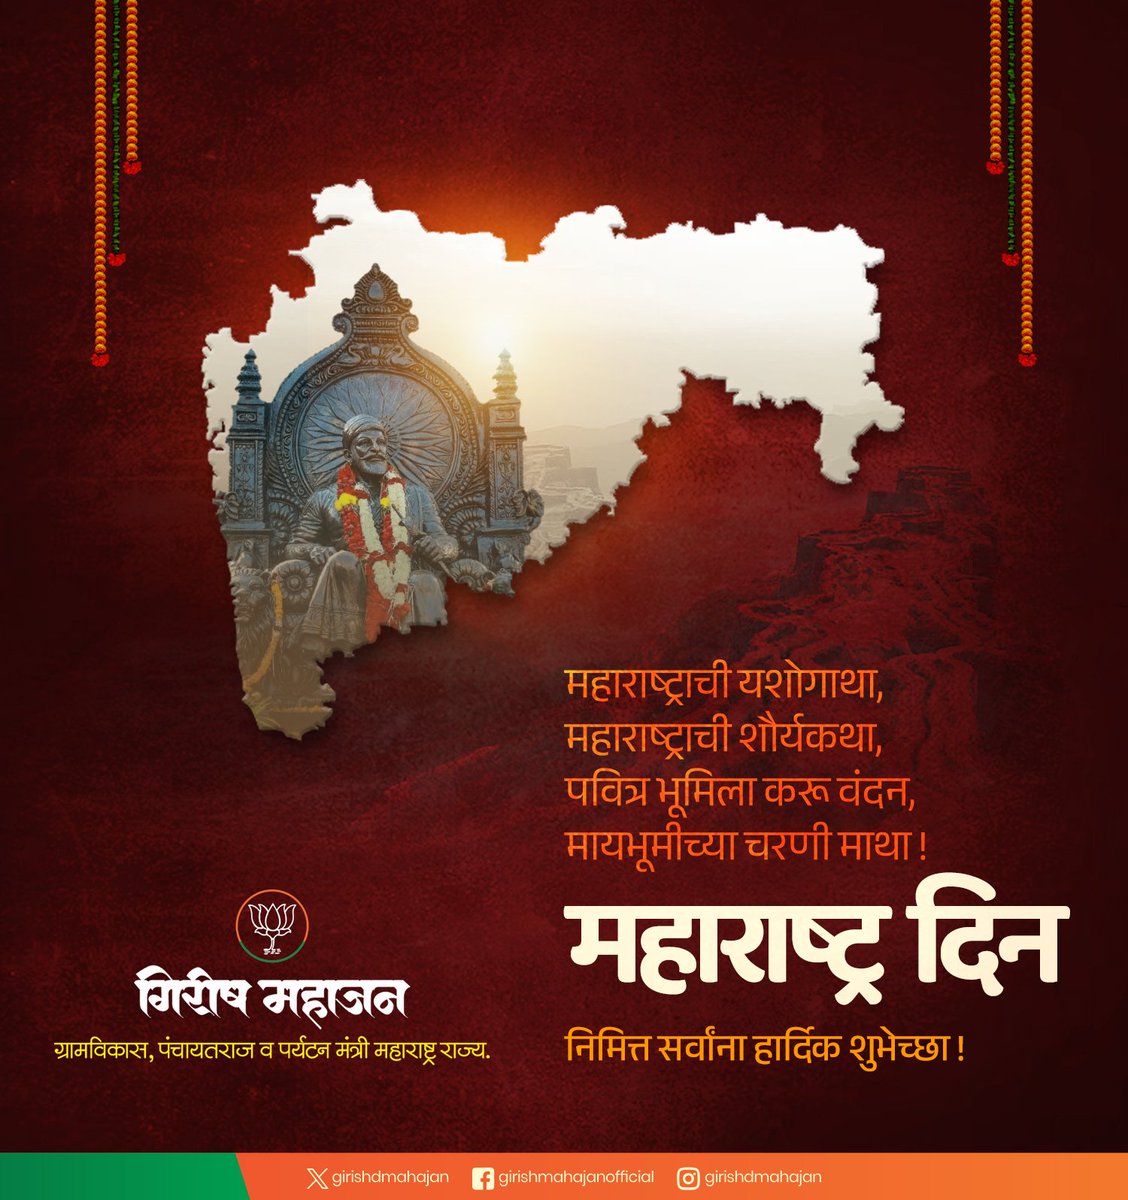 महाराष्ट्राची यशोगाथा, महाराष्ट्राची शौर्यकथा, पवित्र भूमिला करू वंदन, मायभूमीच्या चरणी माथा ! महाराष्ट्र दिनानिमित्त सर्वांना हार्दिक शुभेच्छा ! #MaharashtraDay #महाराष्ट्र_दिन #Maharashtra